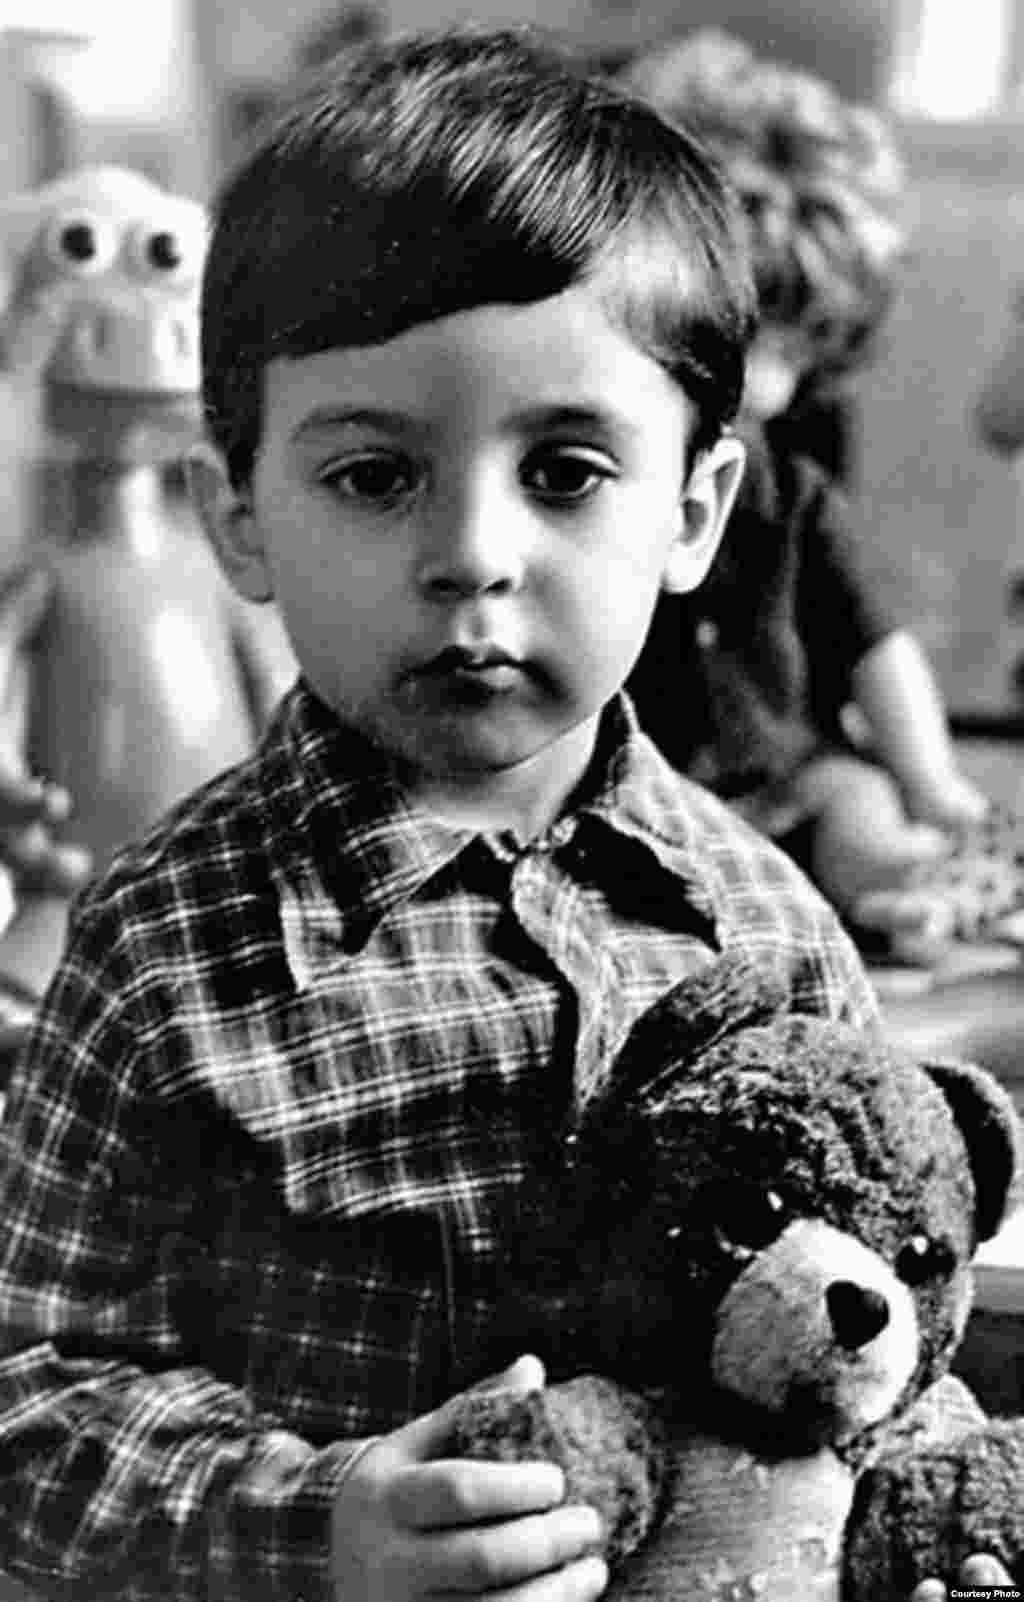 Этот серьезный мальчик &ndash; нынешний президент Украины Владимир Зеленский. Фото сделано в конце 1970-х или в начале 1980-х годов